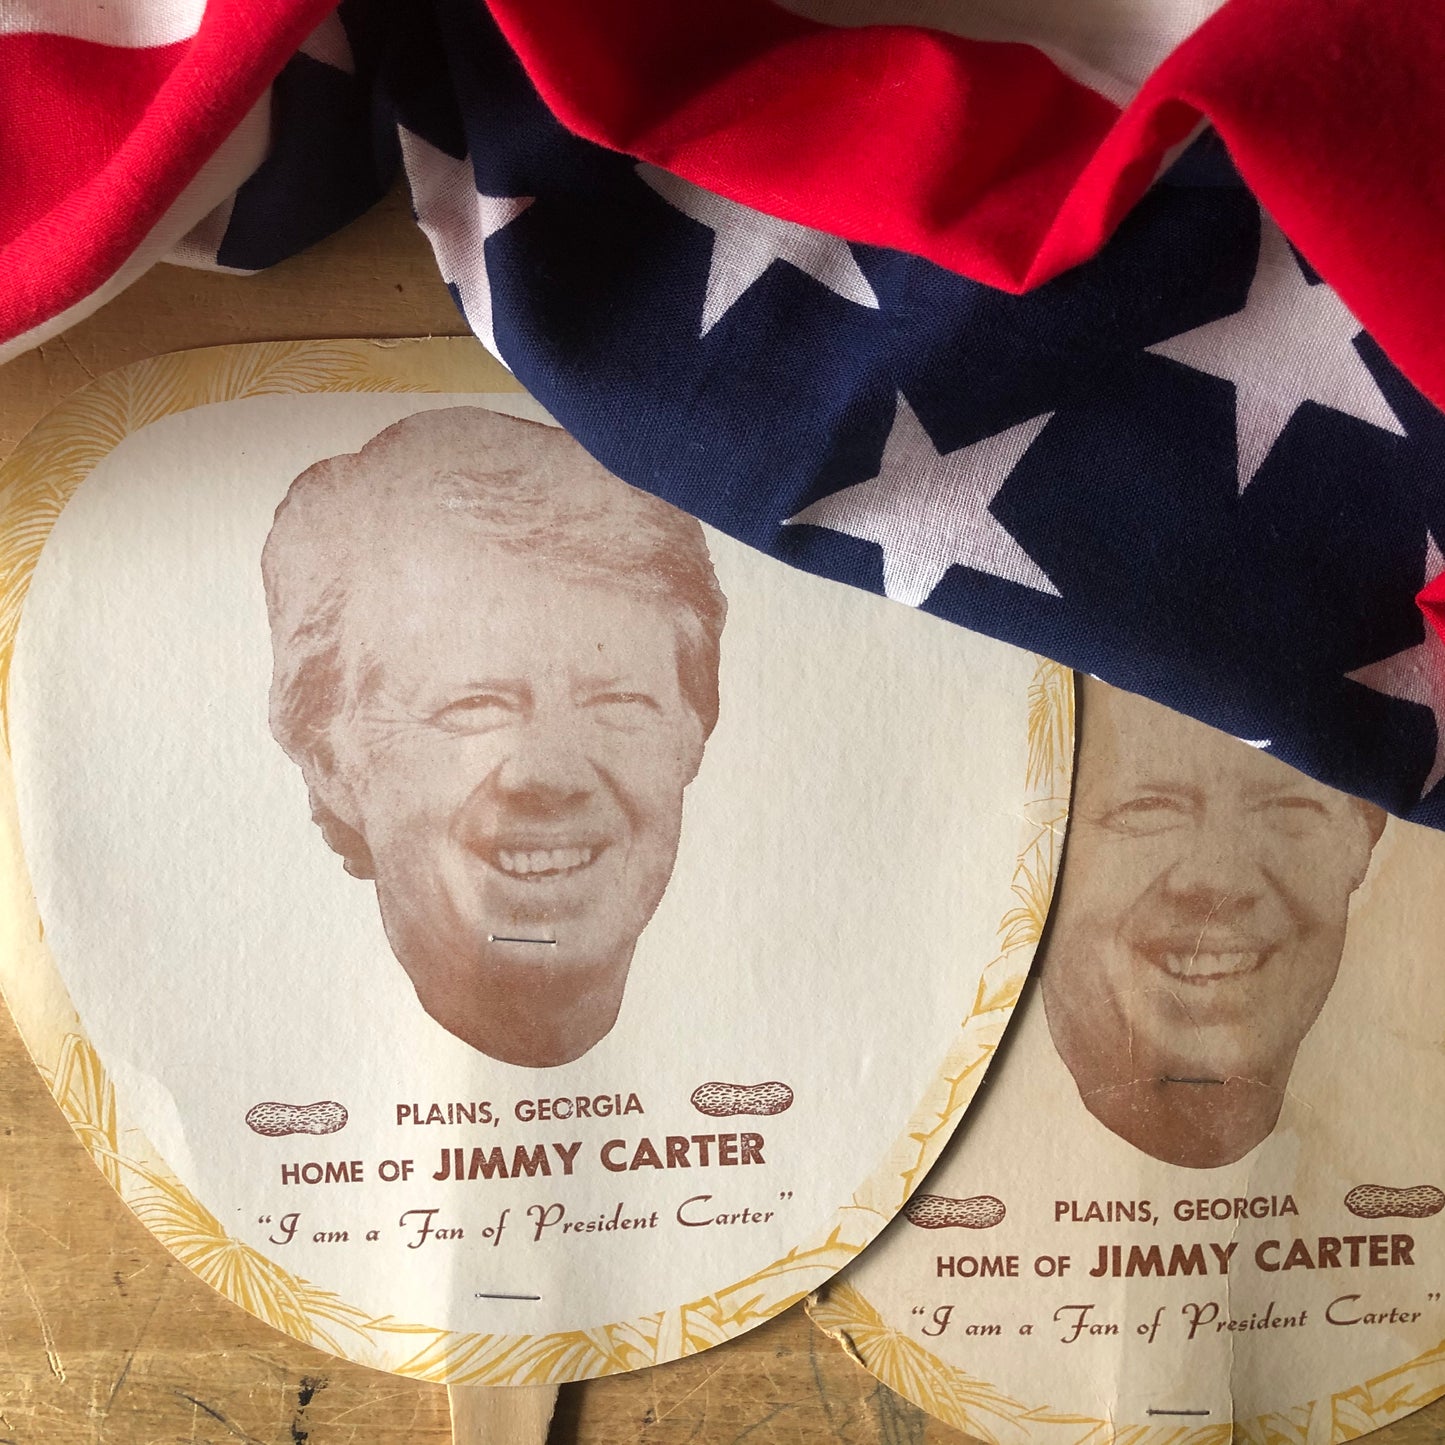 Jimmy Carter's Campaign Paper Fans (c.1980s)